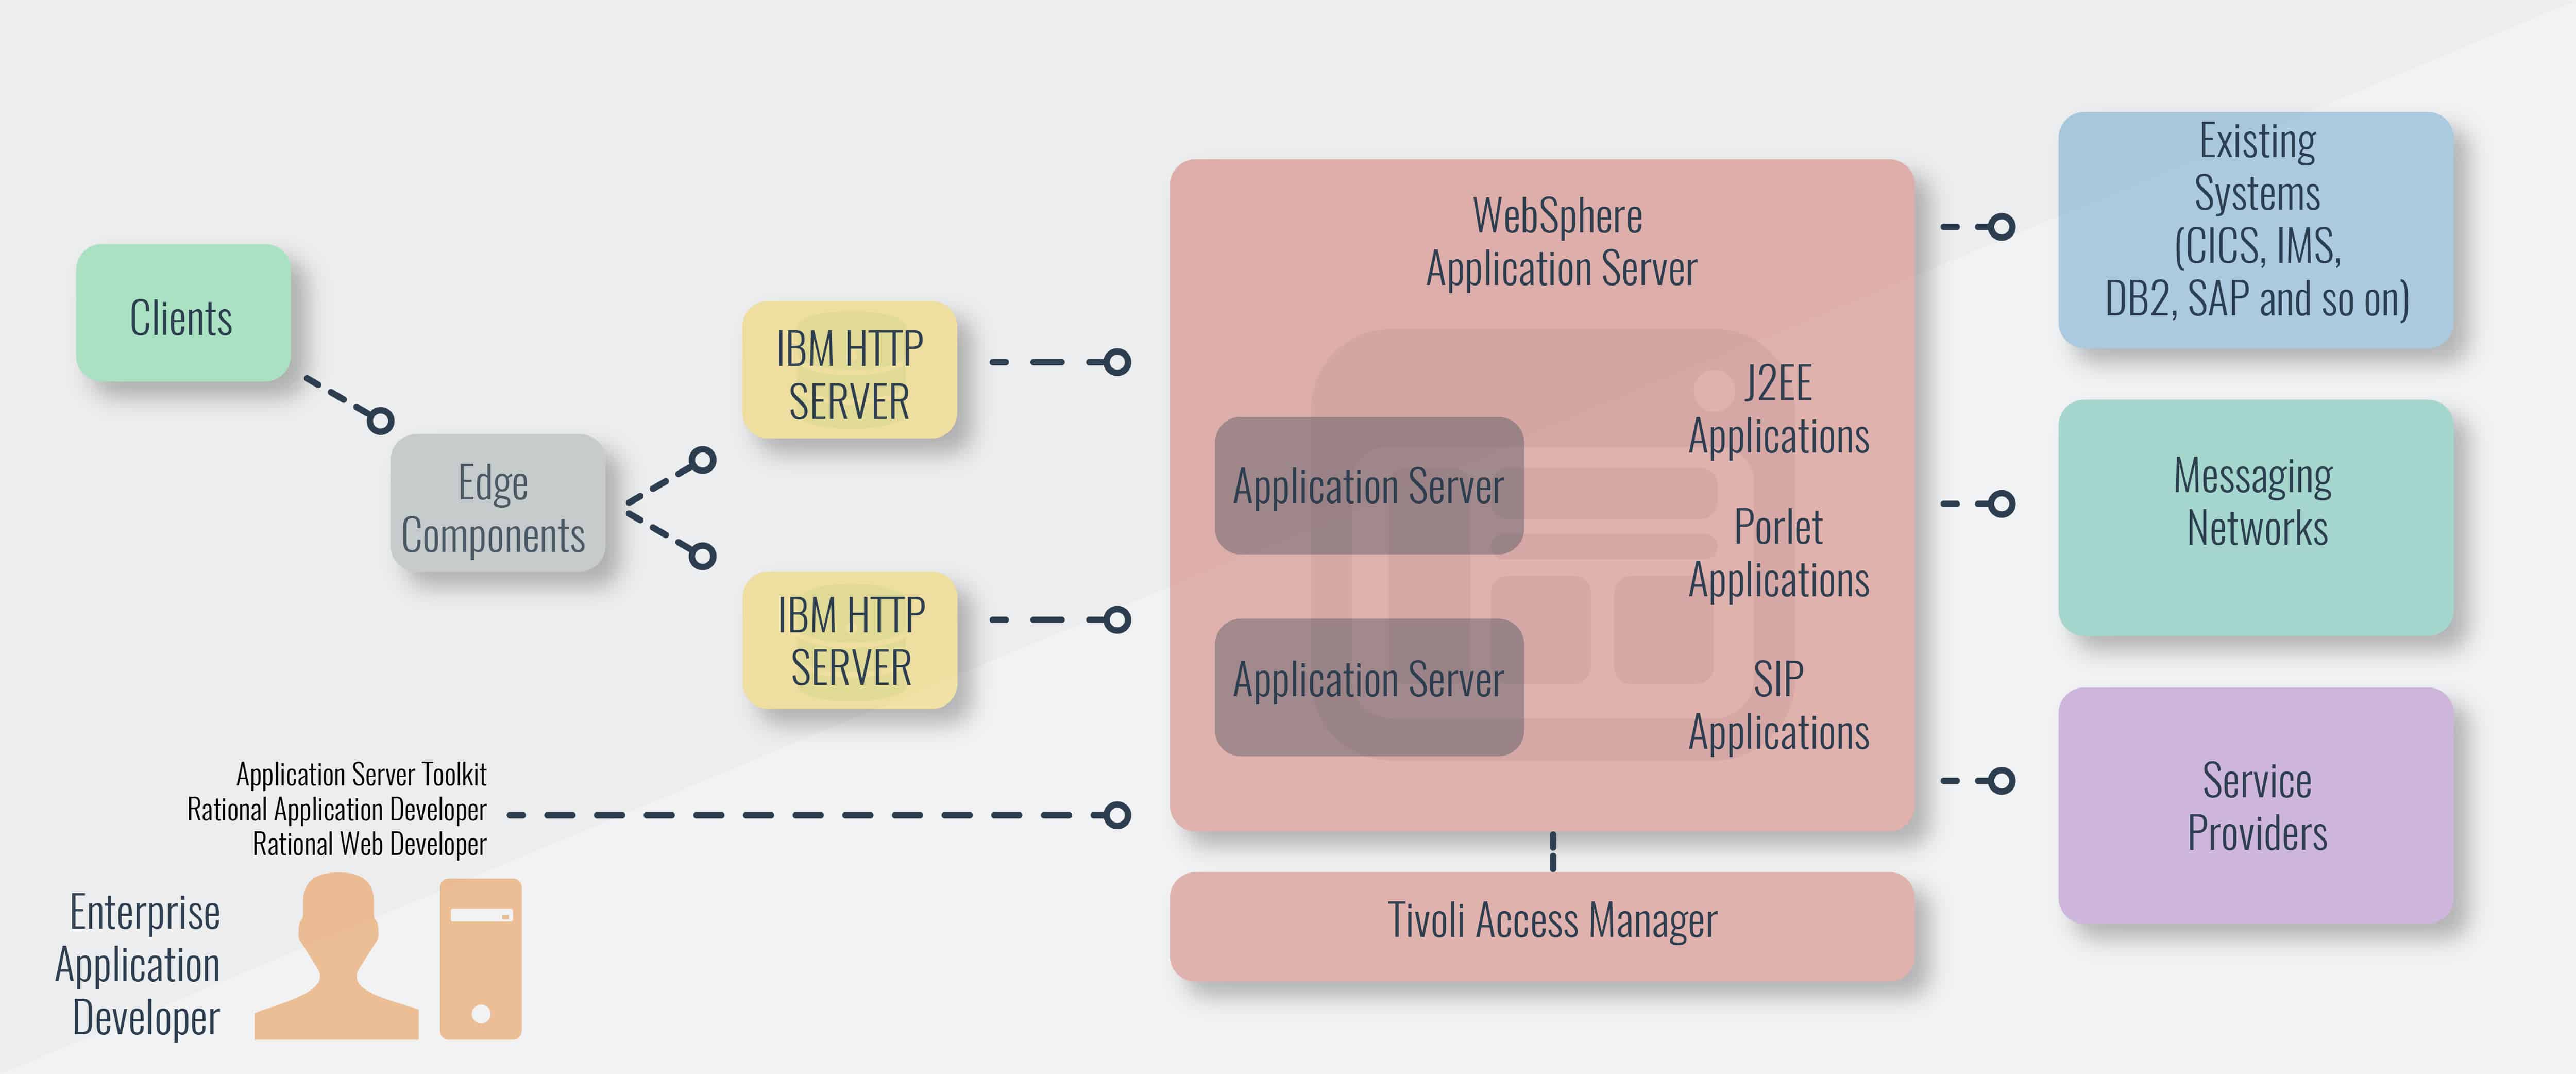 WebSphere Application Server útmutató és felügyeleti eszközök